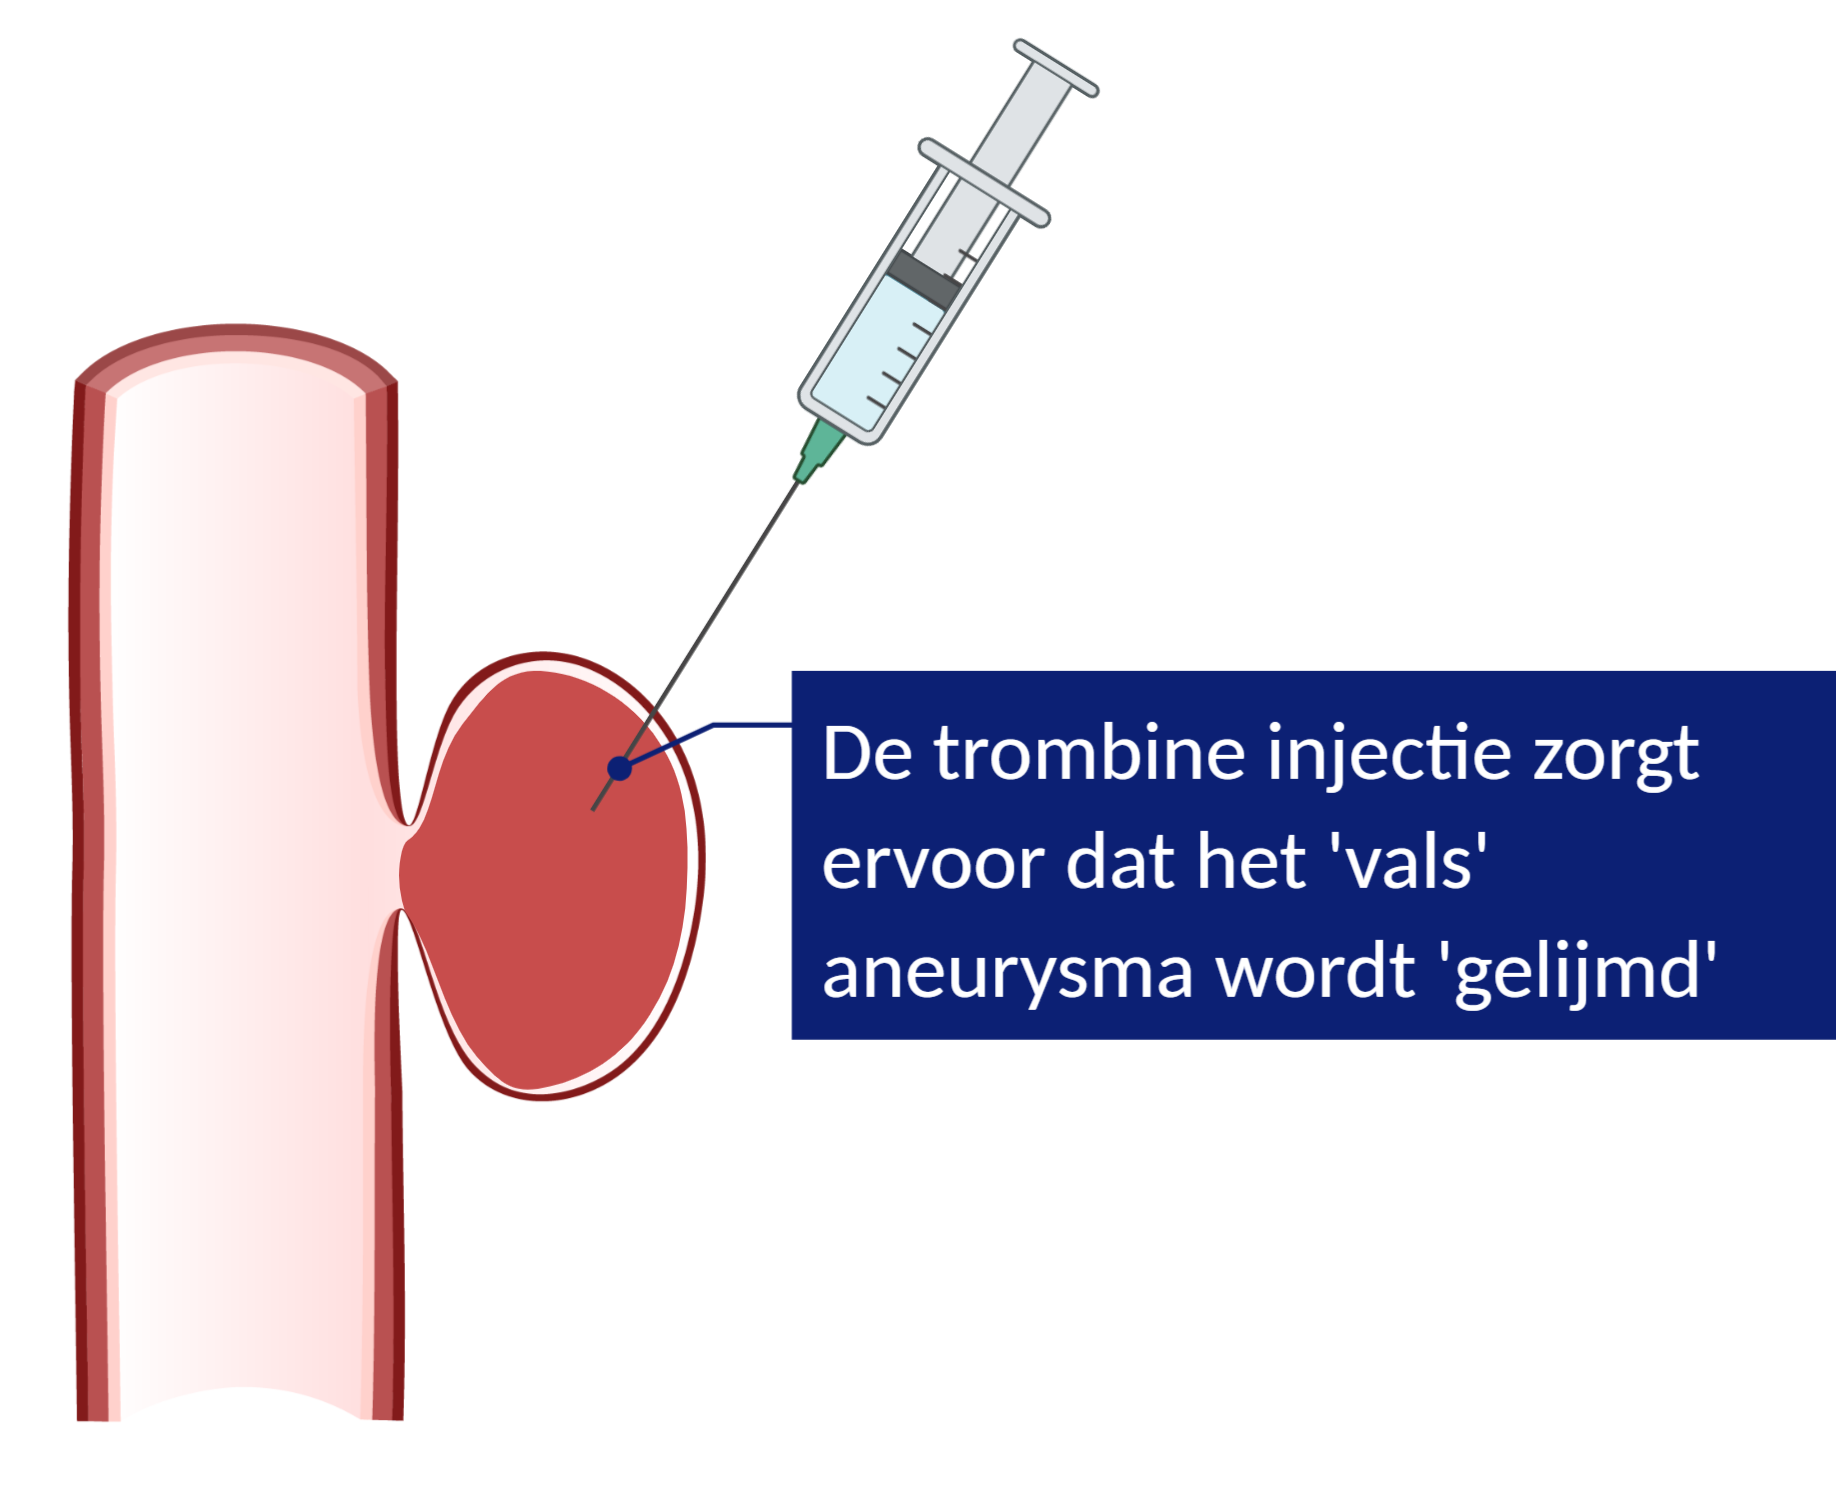 Met een trombine injectie spuiten we trombine in het 'vals' aneurysma, zodat het aneurysma wordt dichtgelijmd.